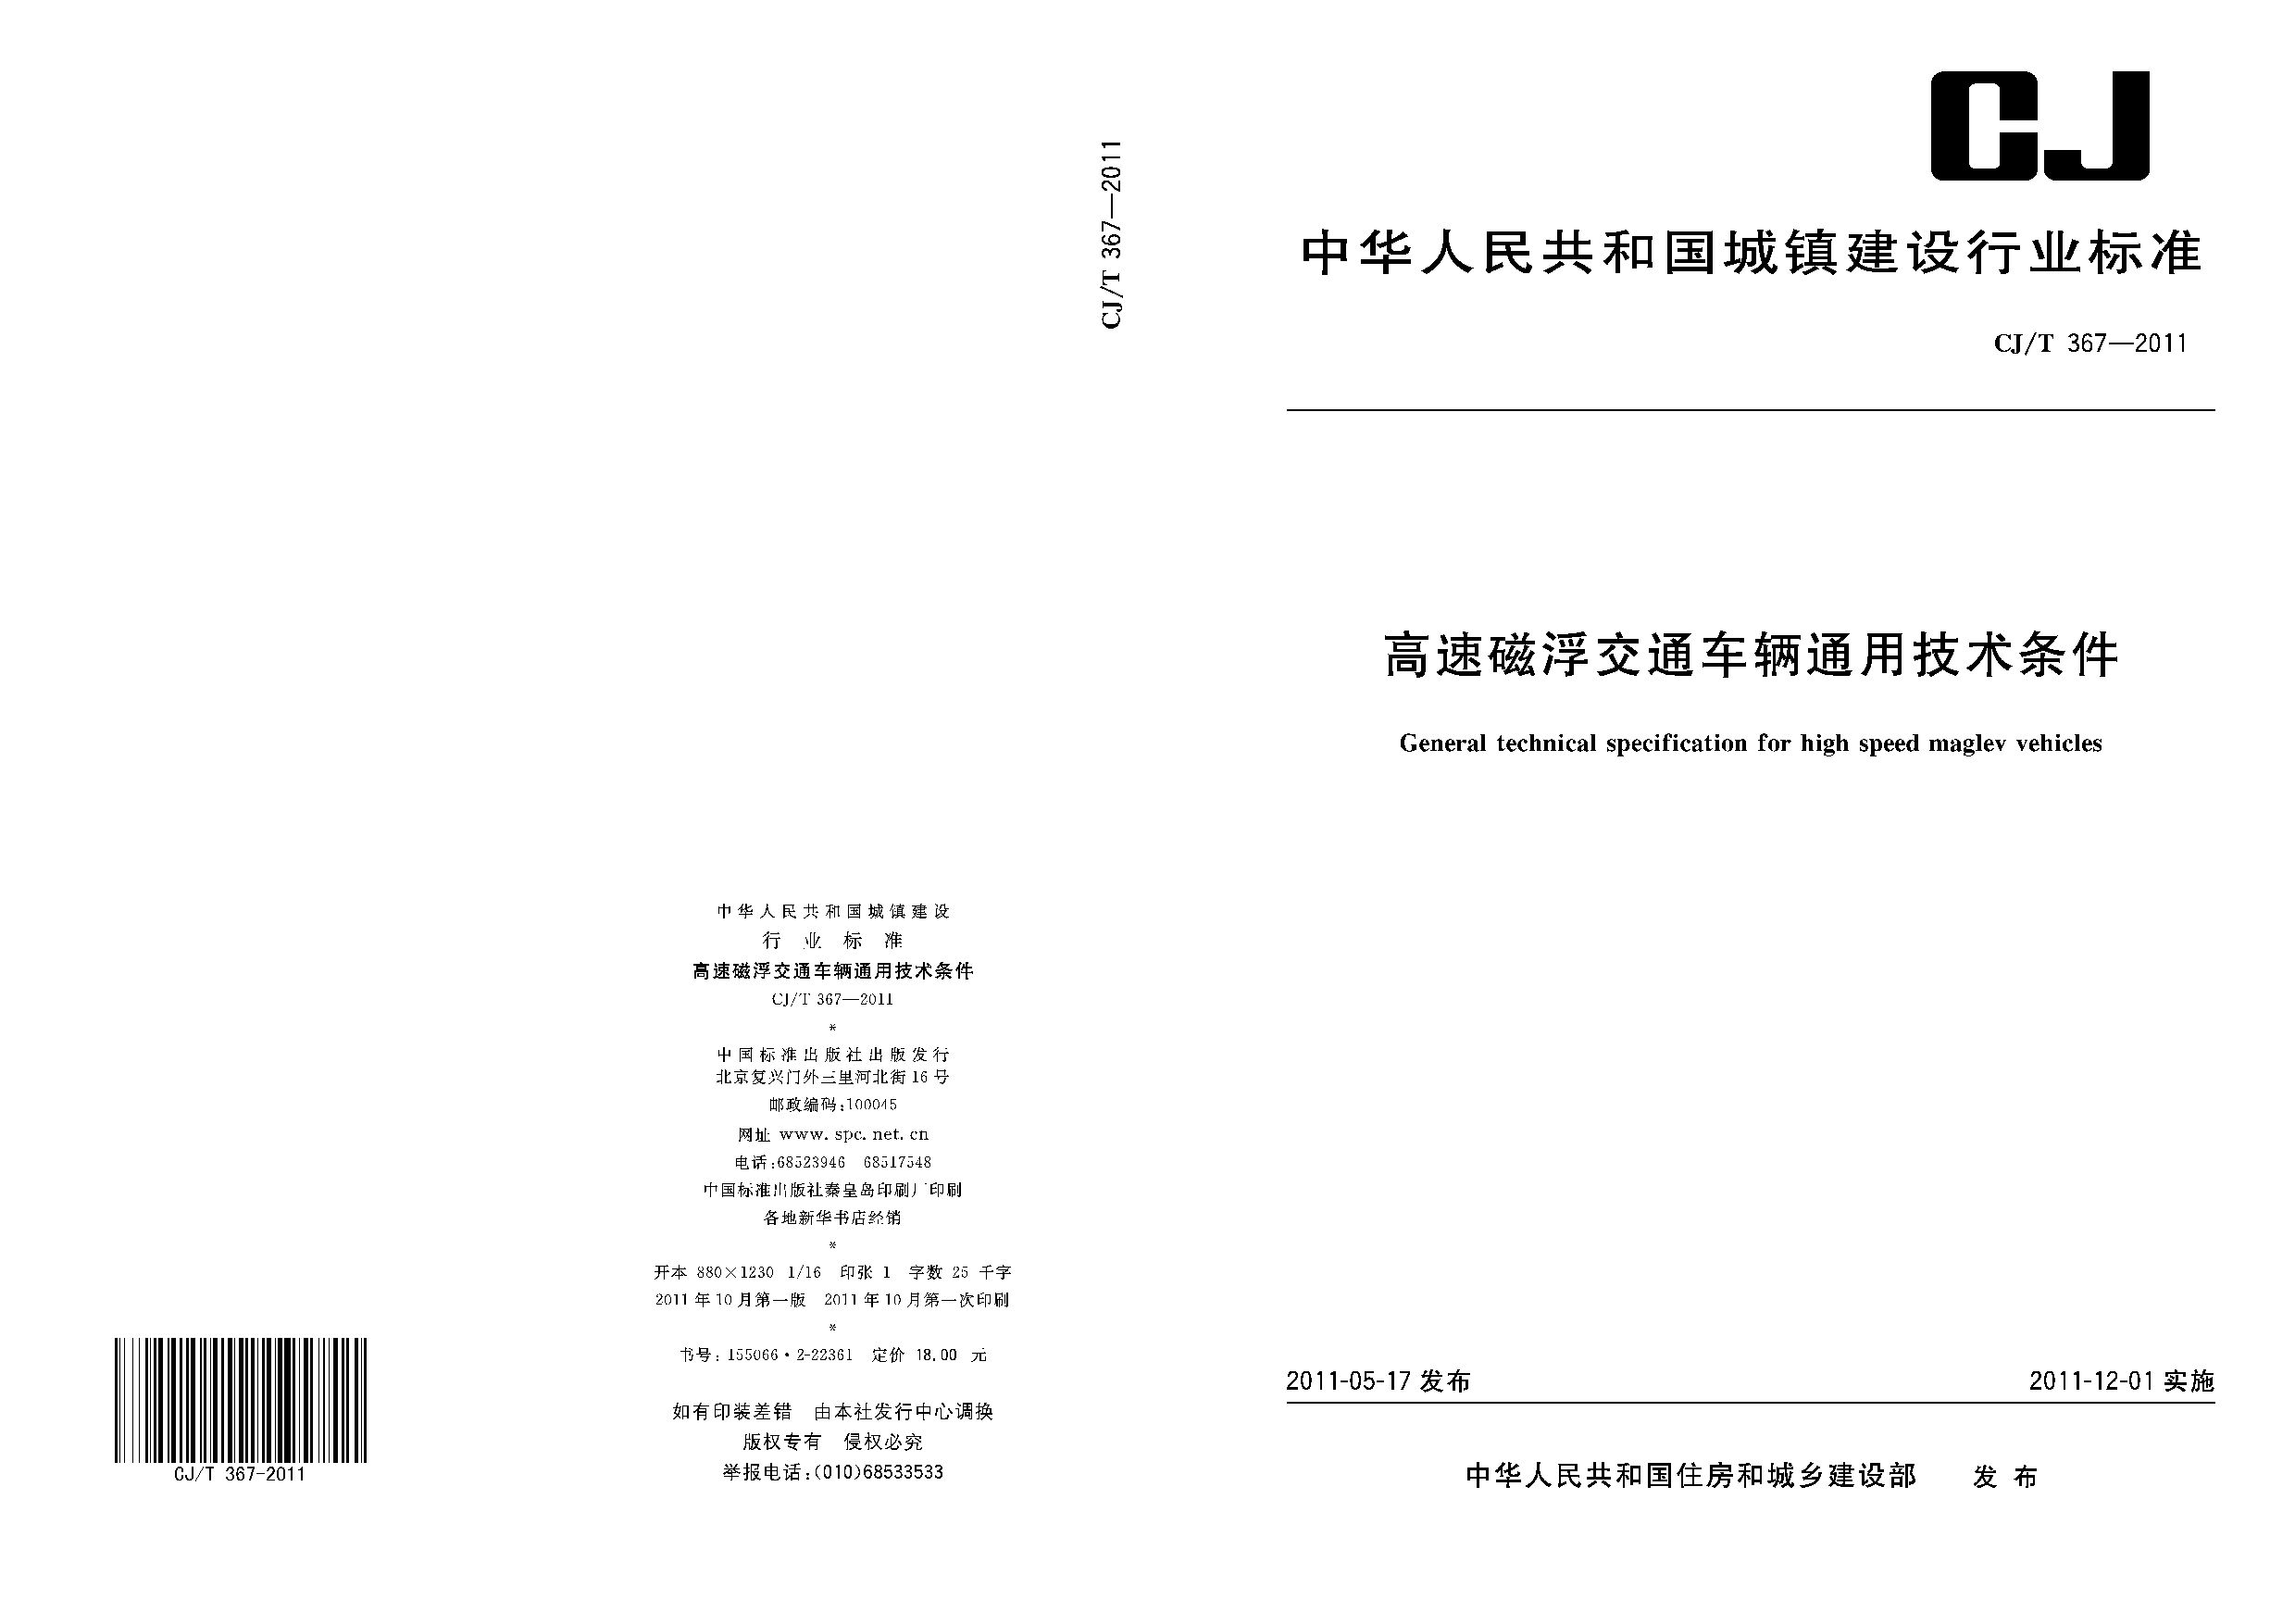 CJ/T 367-2011封面图